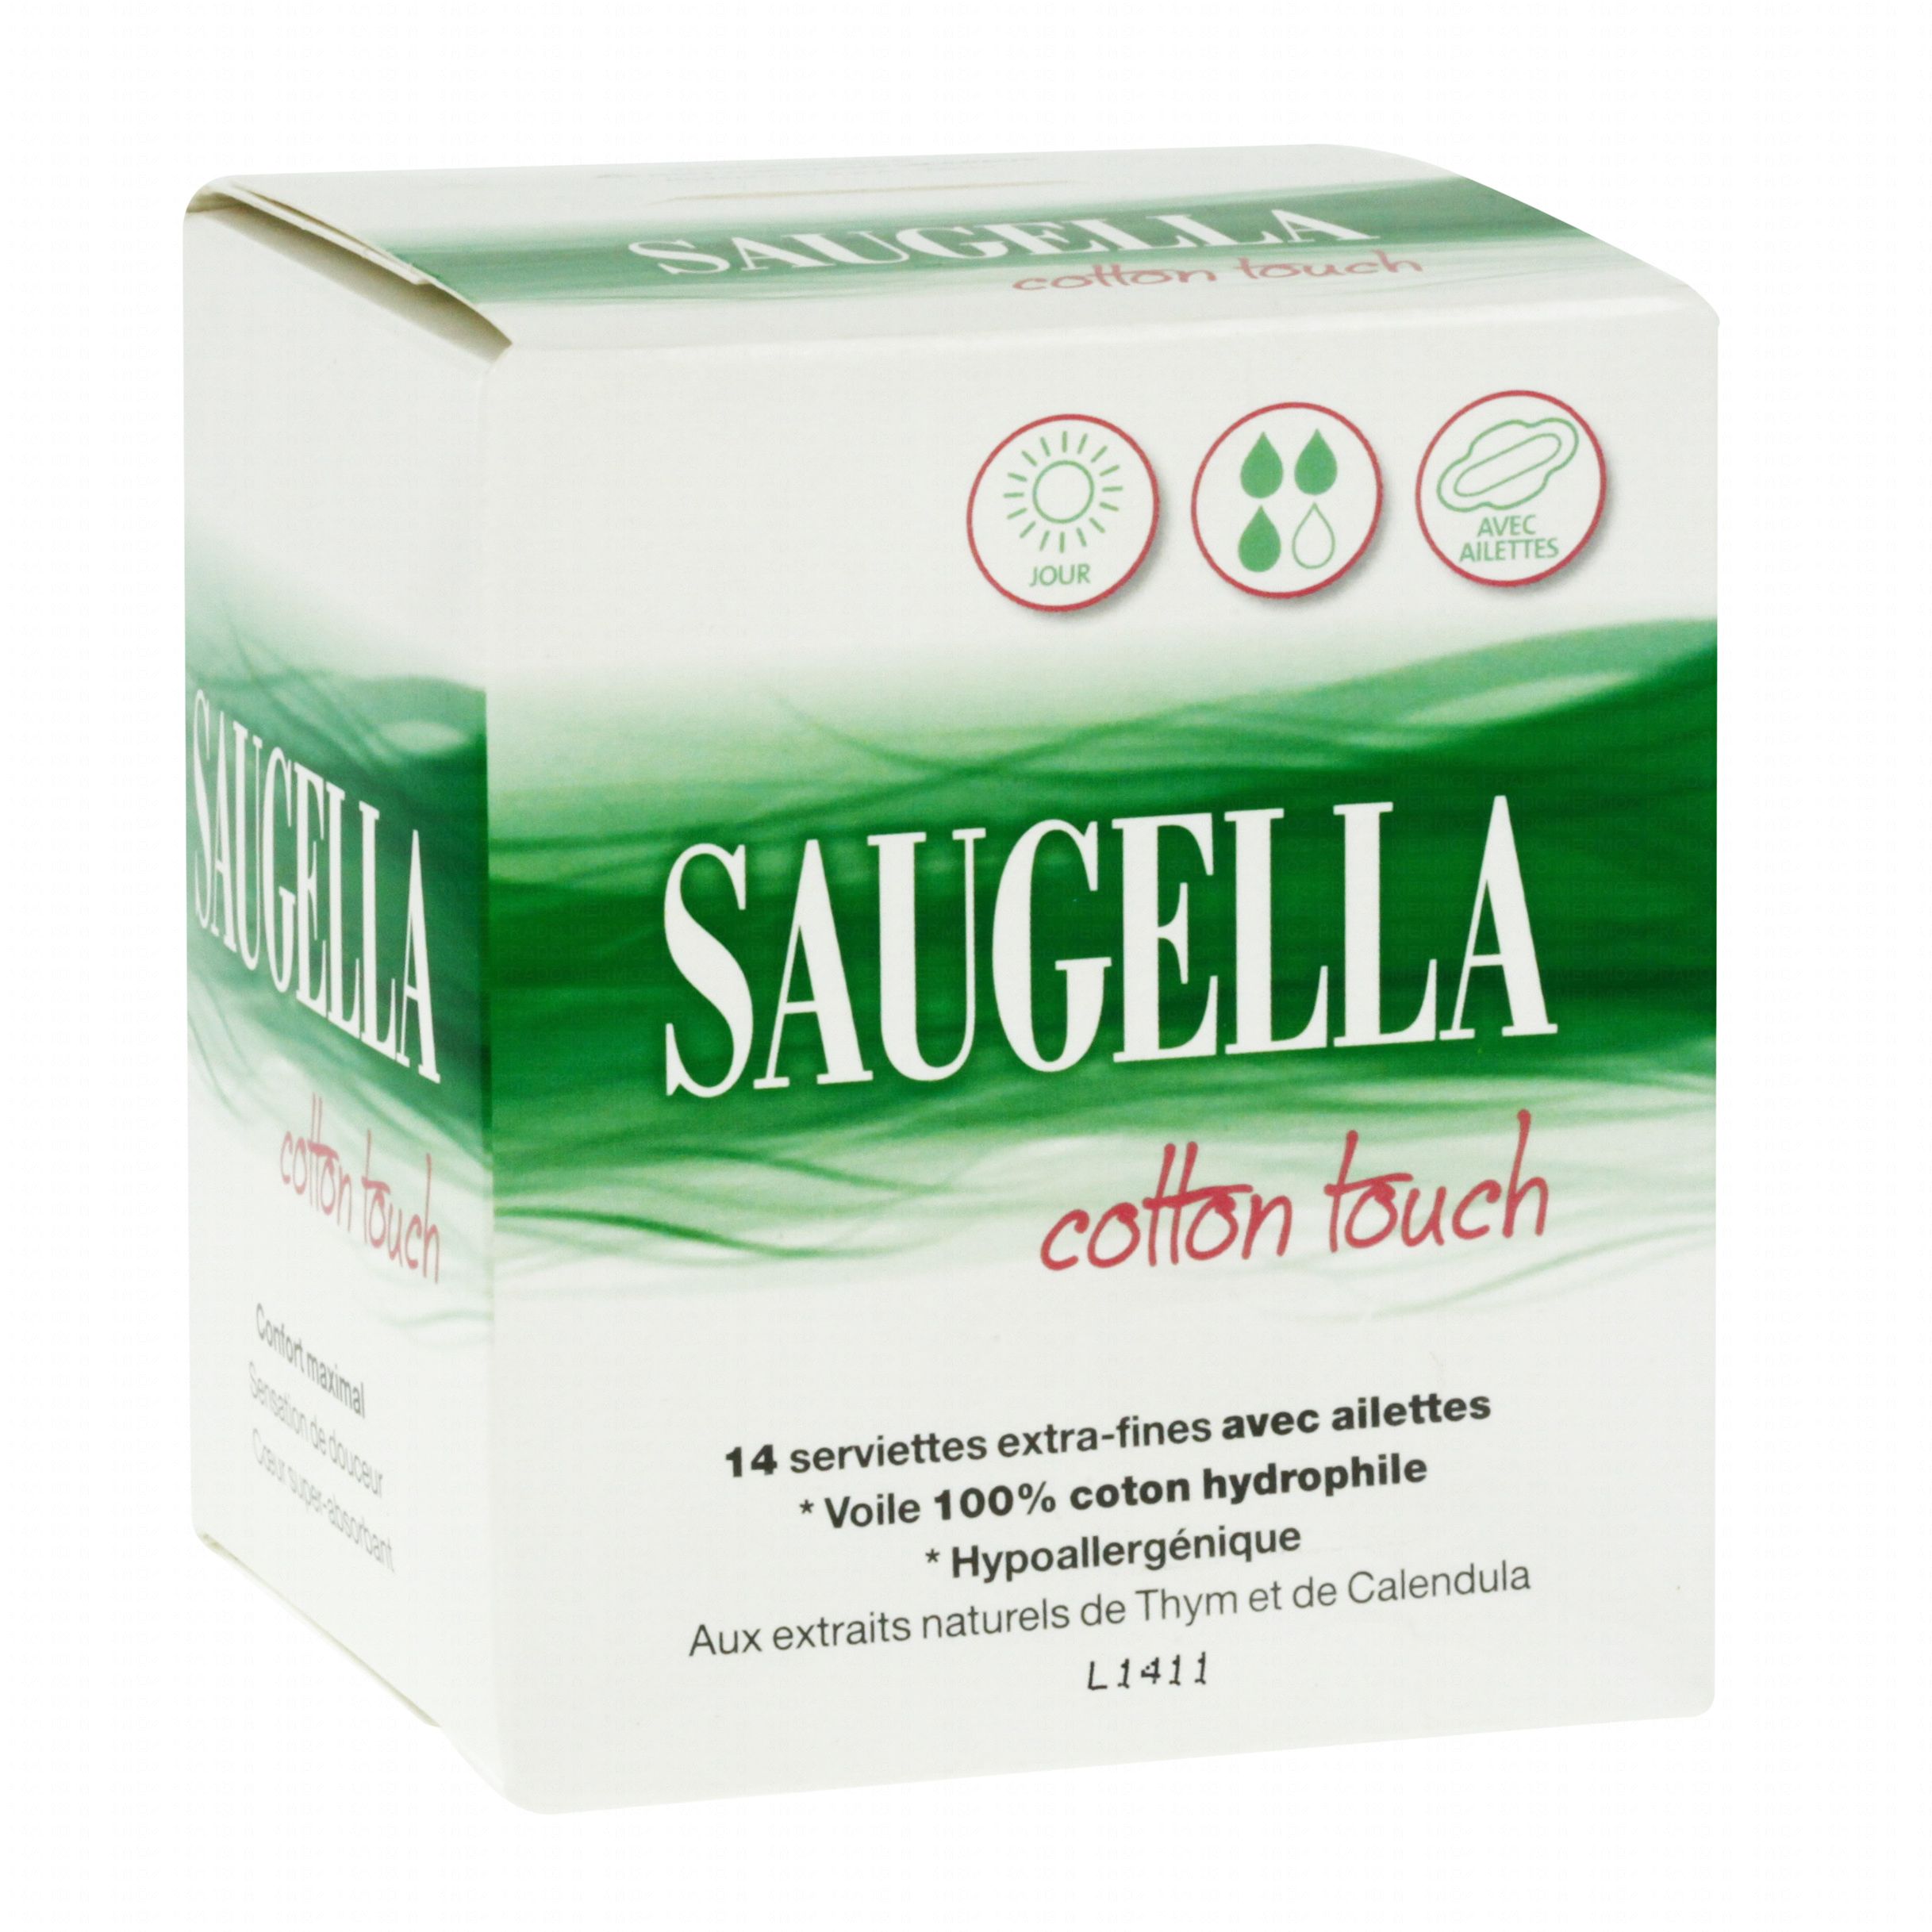 Saugella Cotton Touch Serviettes maternité - 10 serviettes